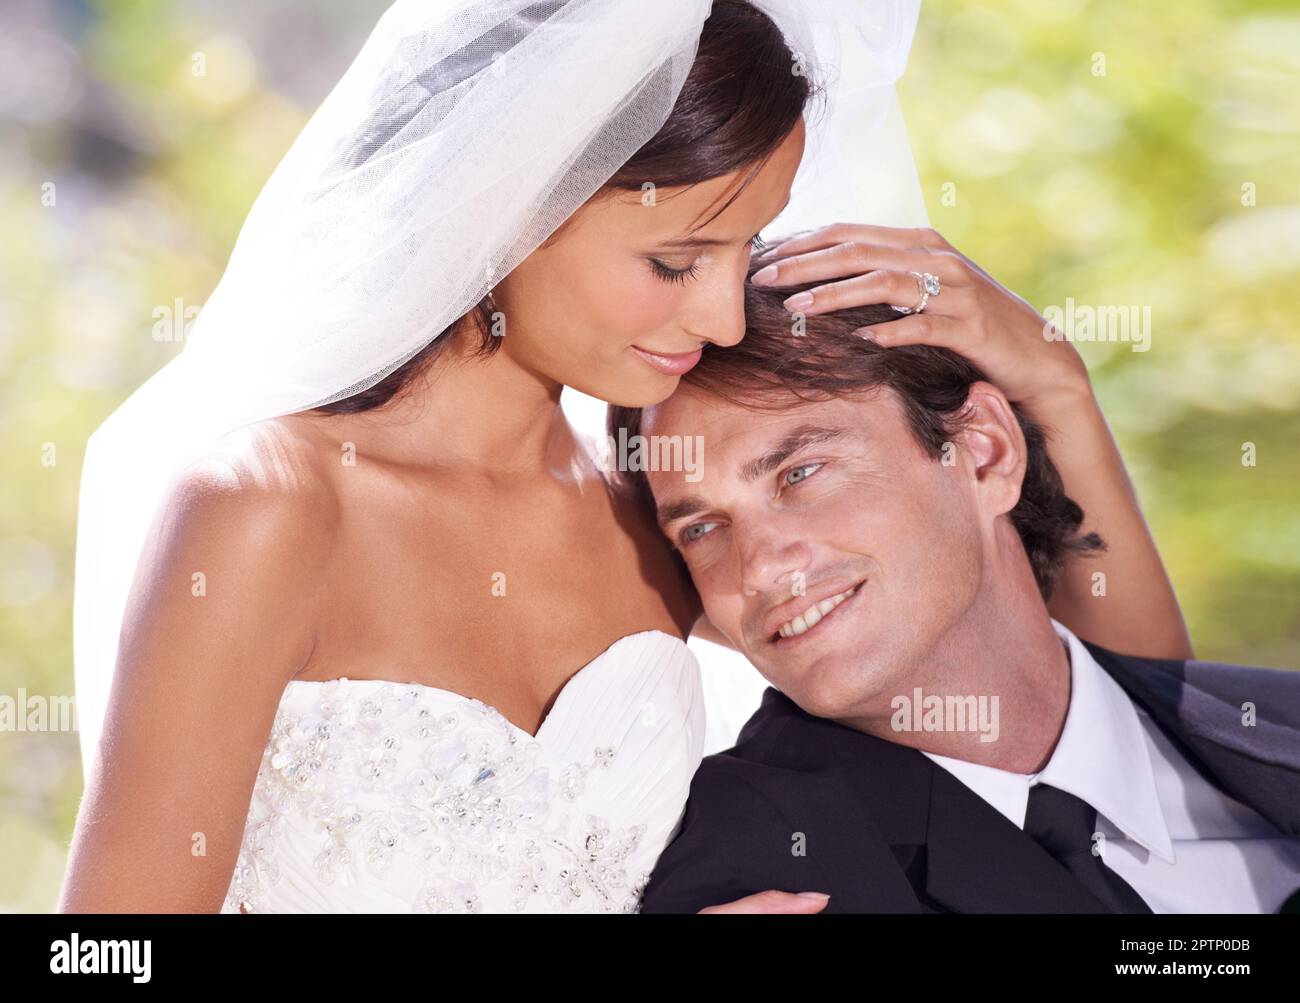 Die Ehe ist eine lebenslange Reise. Eine Braut und ein Bräutigam an ihrem  Hochzeitstag Stockfotografie - Alamy